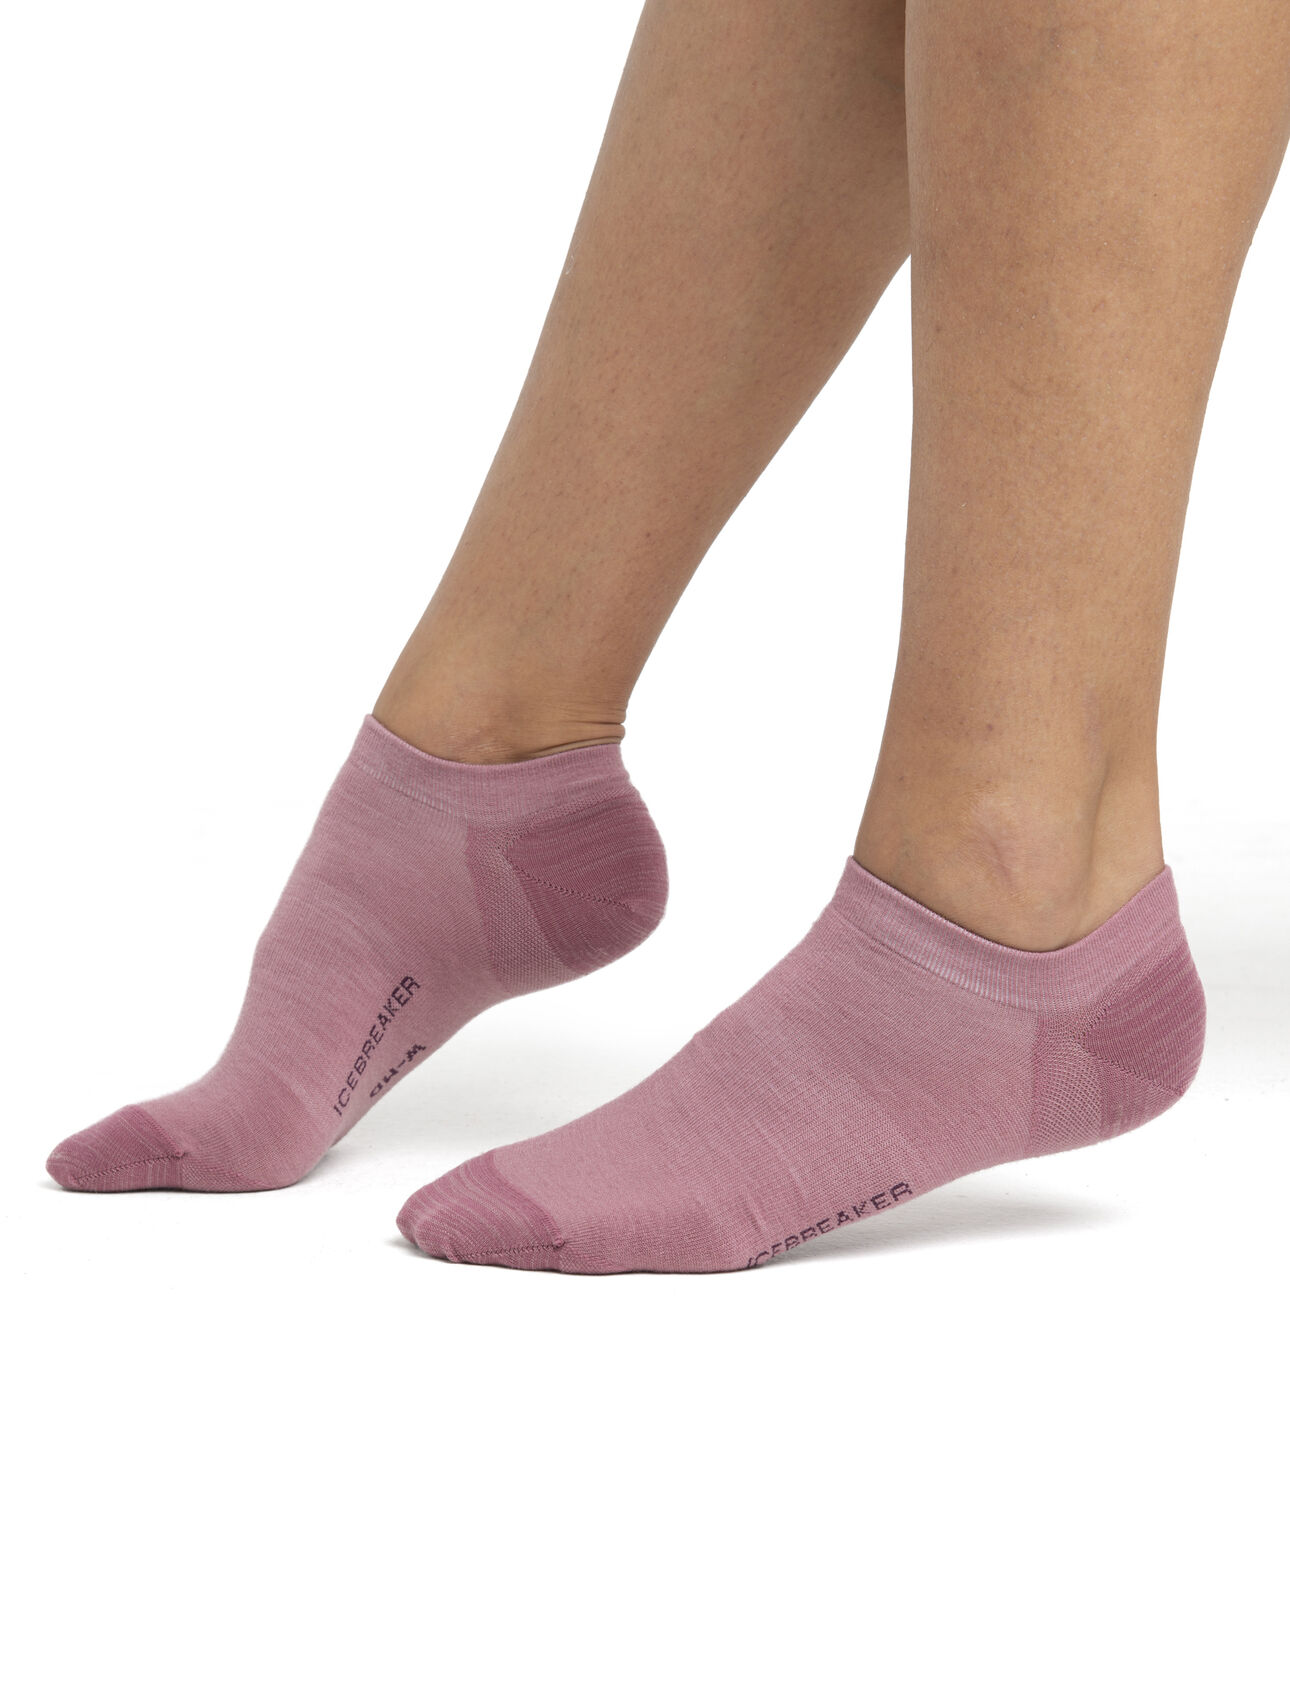 Merino Lifestyle Feinstricksocken No Show Damen Leichte, lässige Socken für jeden Tag, die Lifestyle Feinstricksocken No-Show verbinden den Komfort von hochwertiger Merinowolle mit einer robusten Konstruktion.